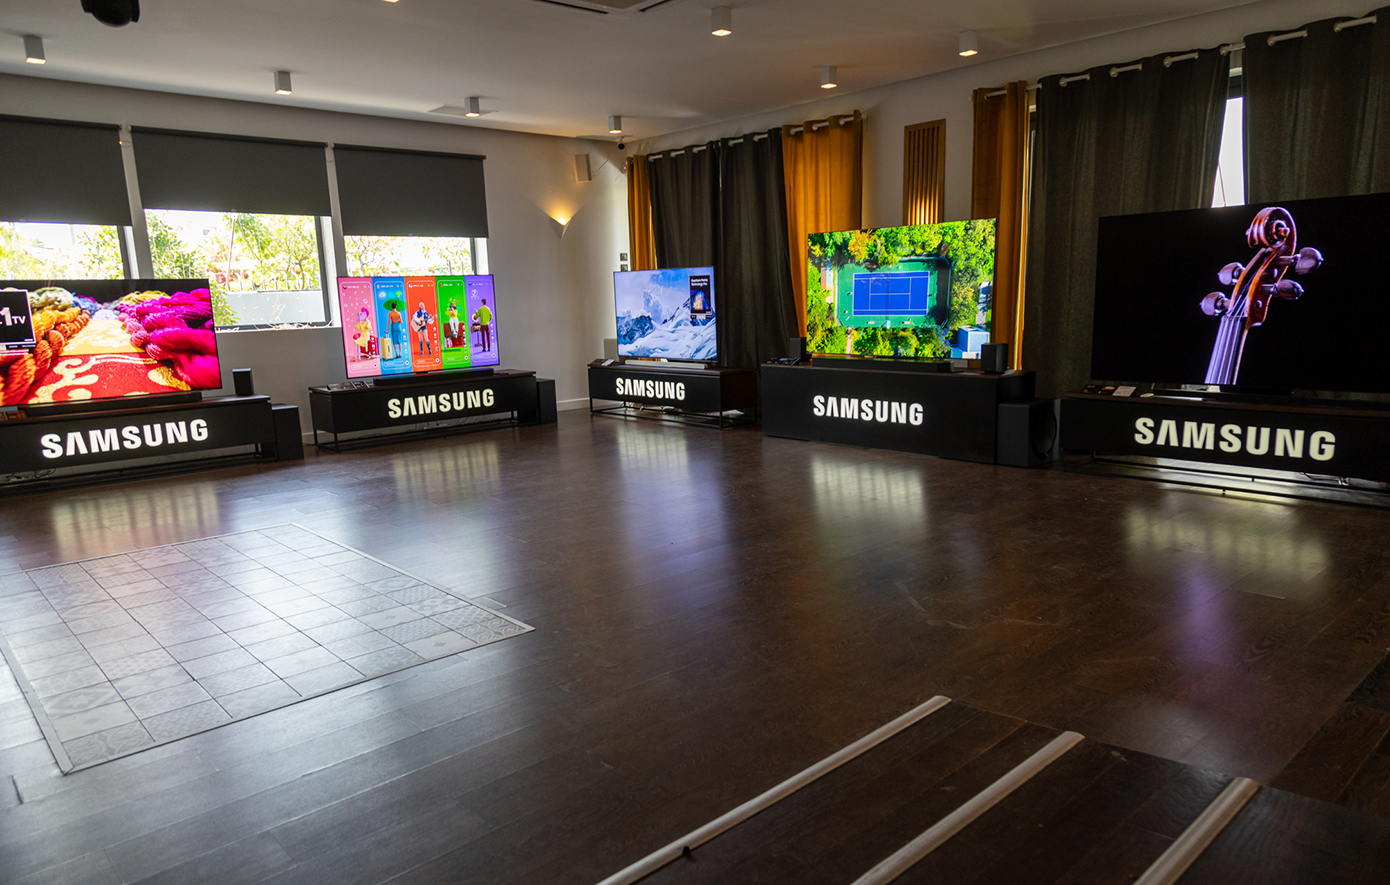 Η τελευταία σειρά τηλεοράσεων της Samsung  φέρνει τη νέα εποχή της Samsung AI TV